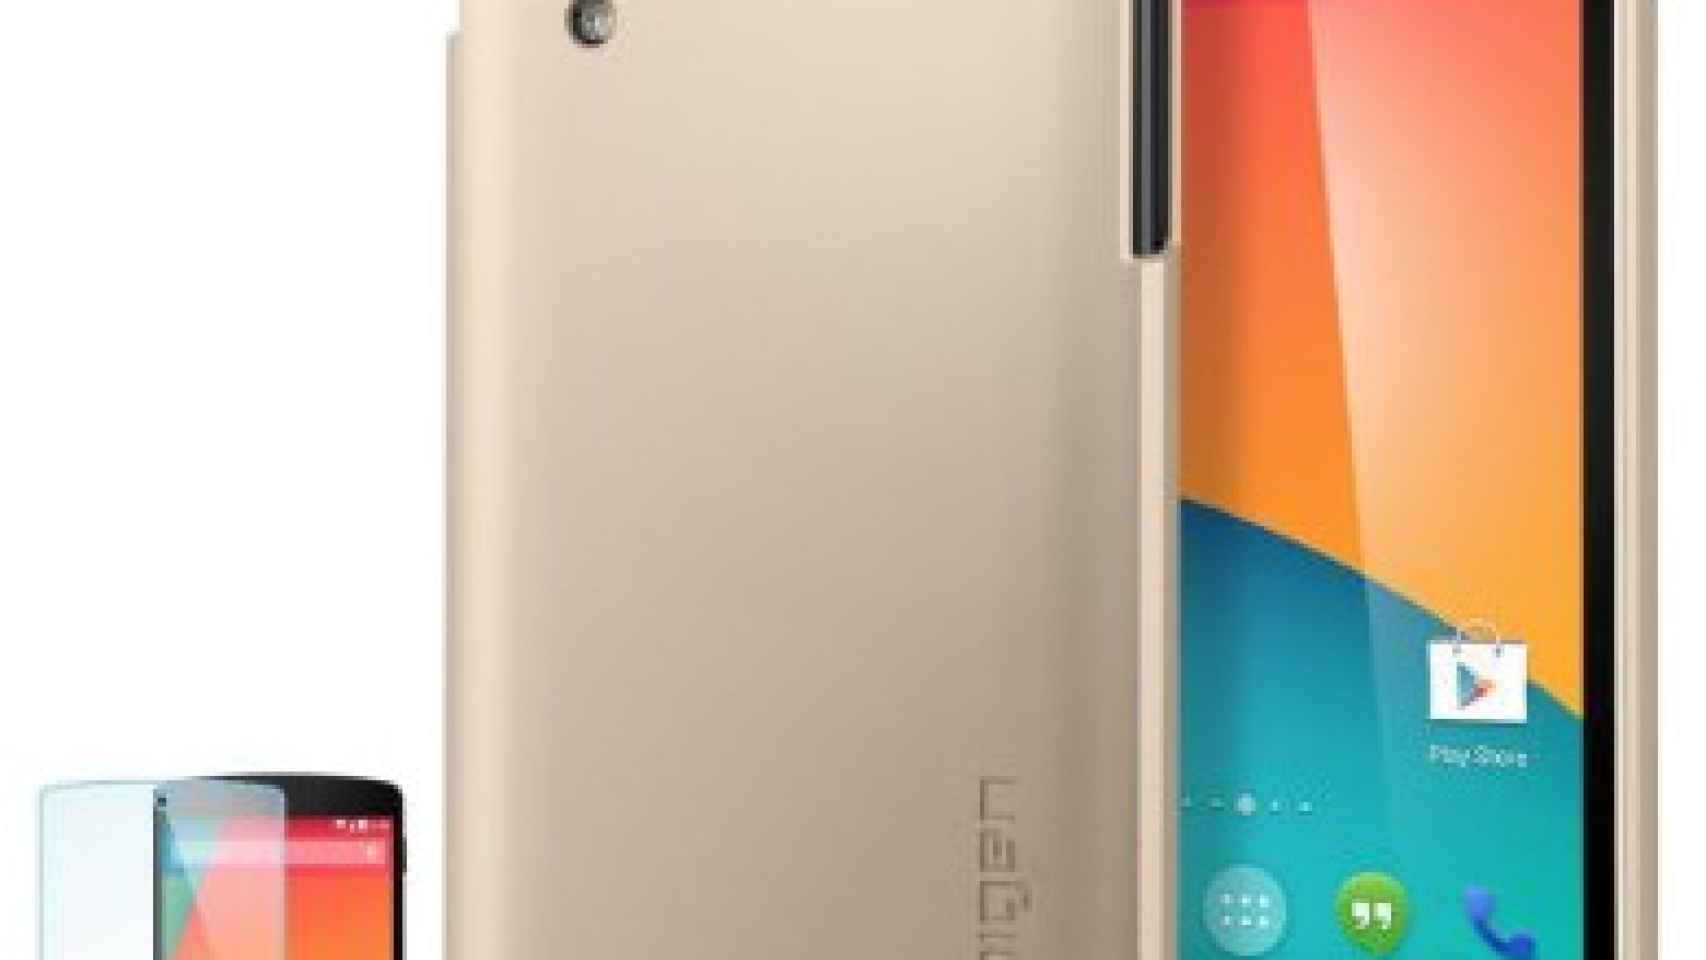 El Nexus 5 y sus fundas a debate